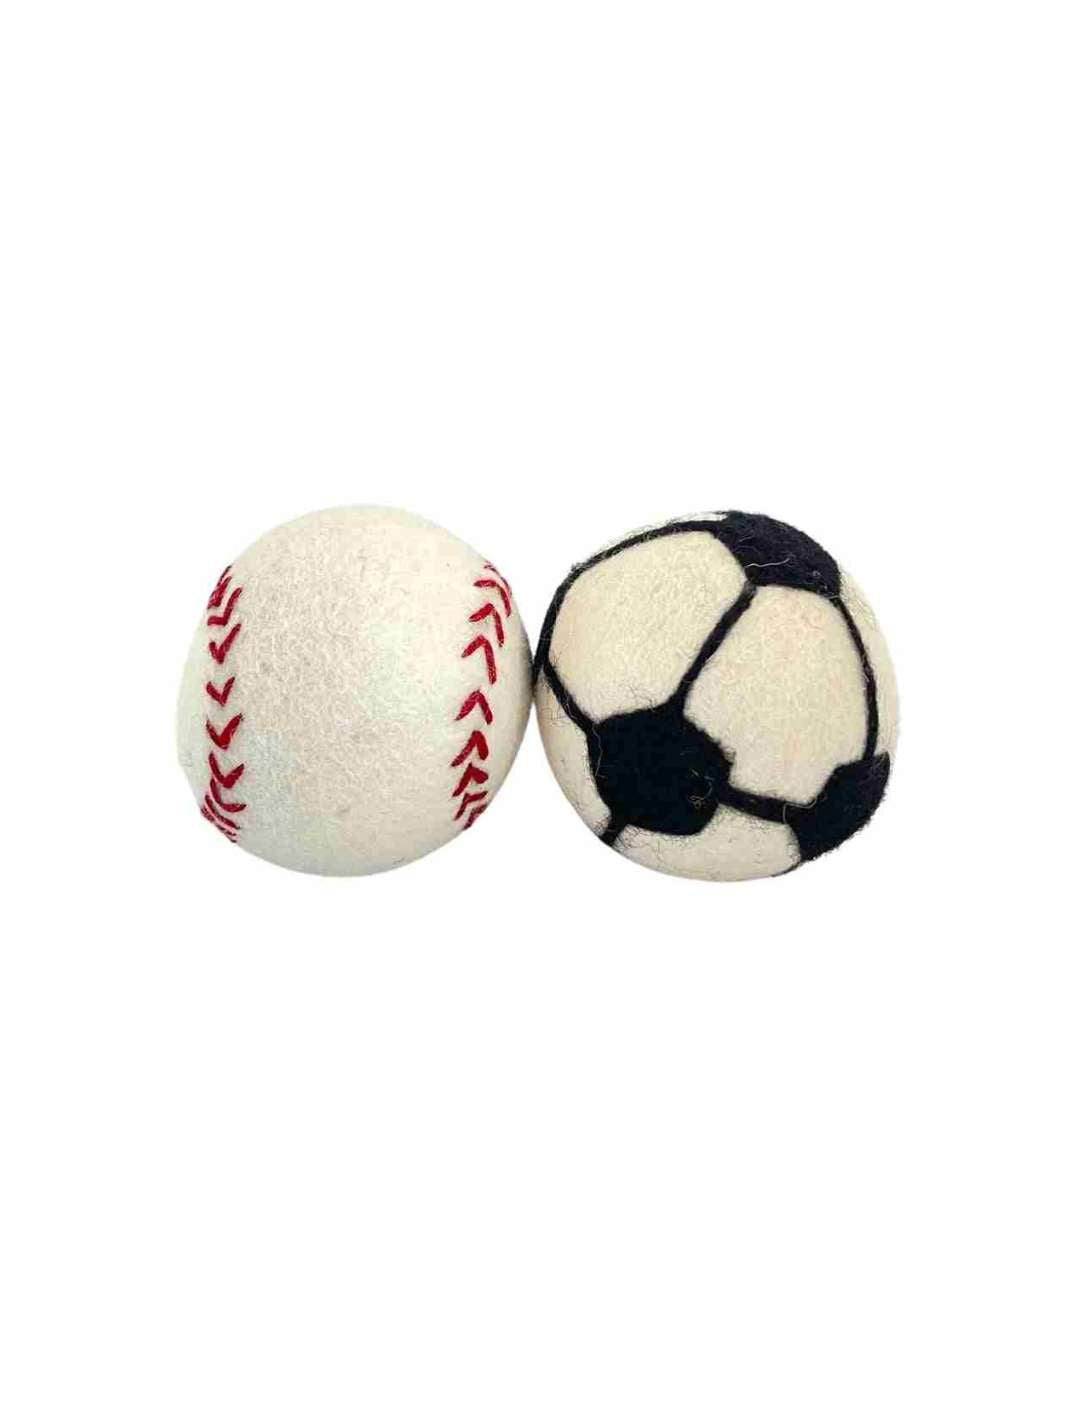 Jumbo Eco Dog Balls (Set of 2) - 10 cm